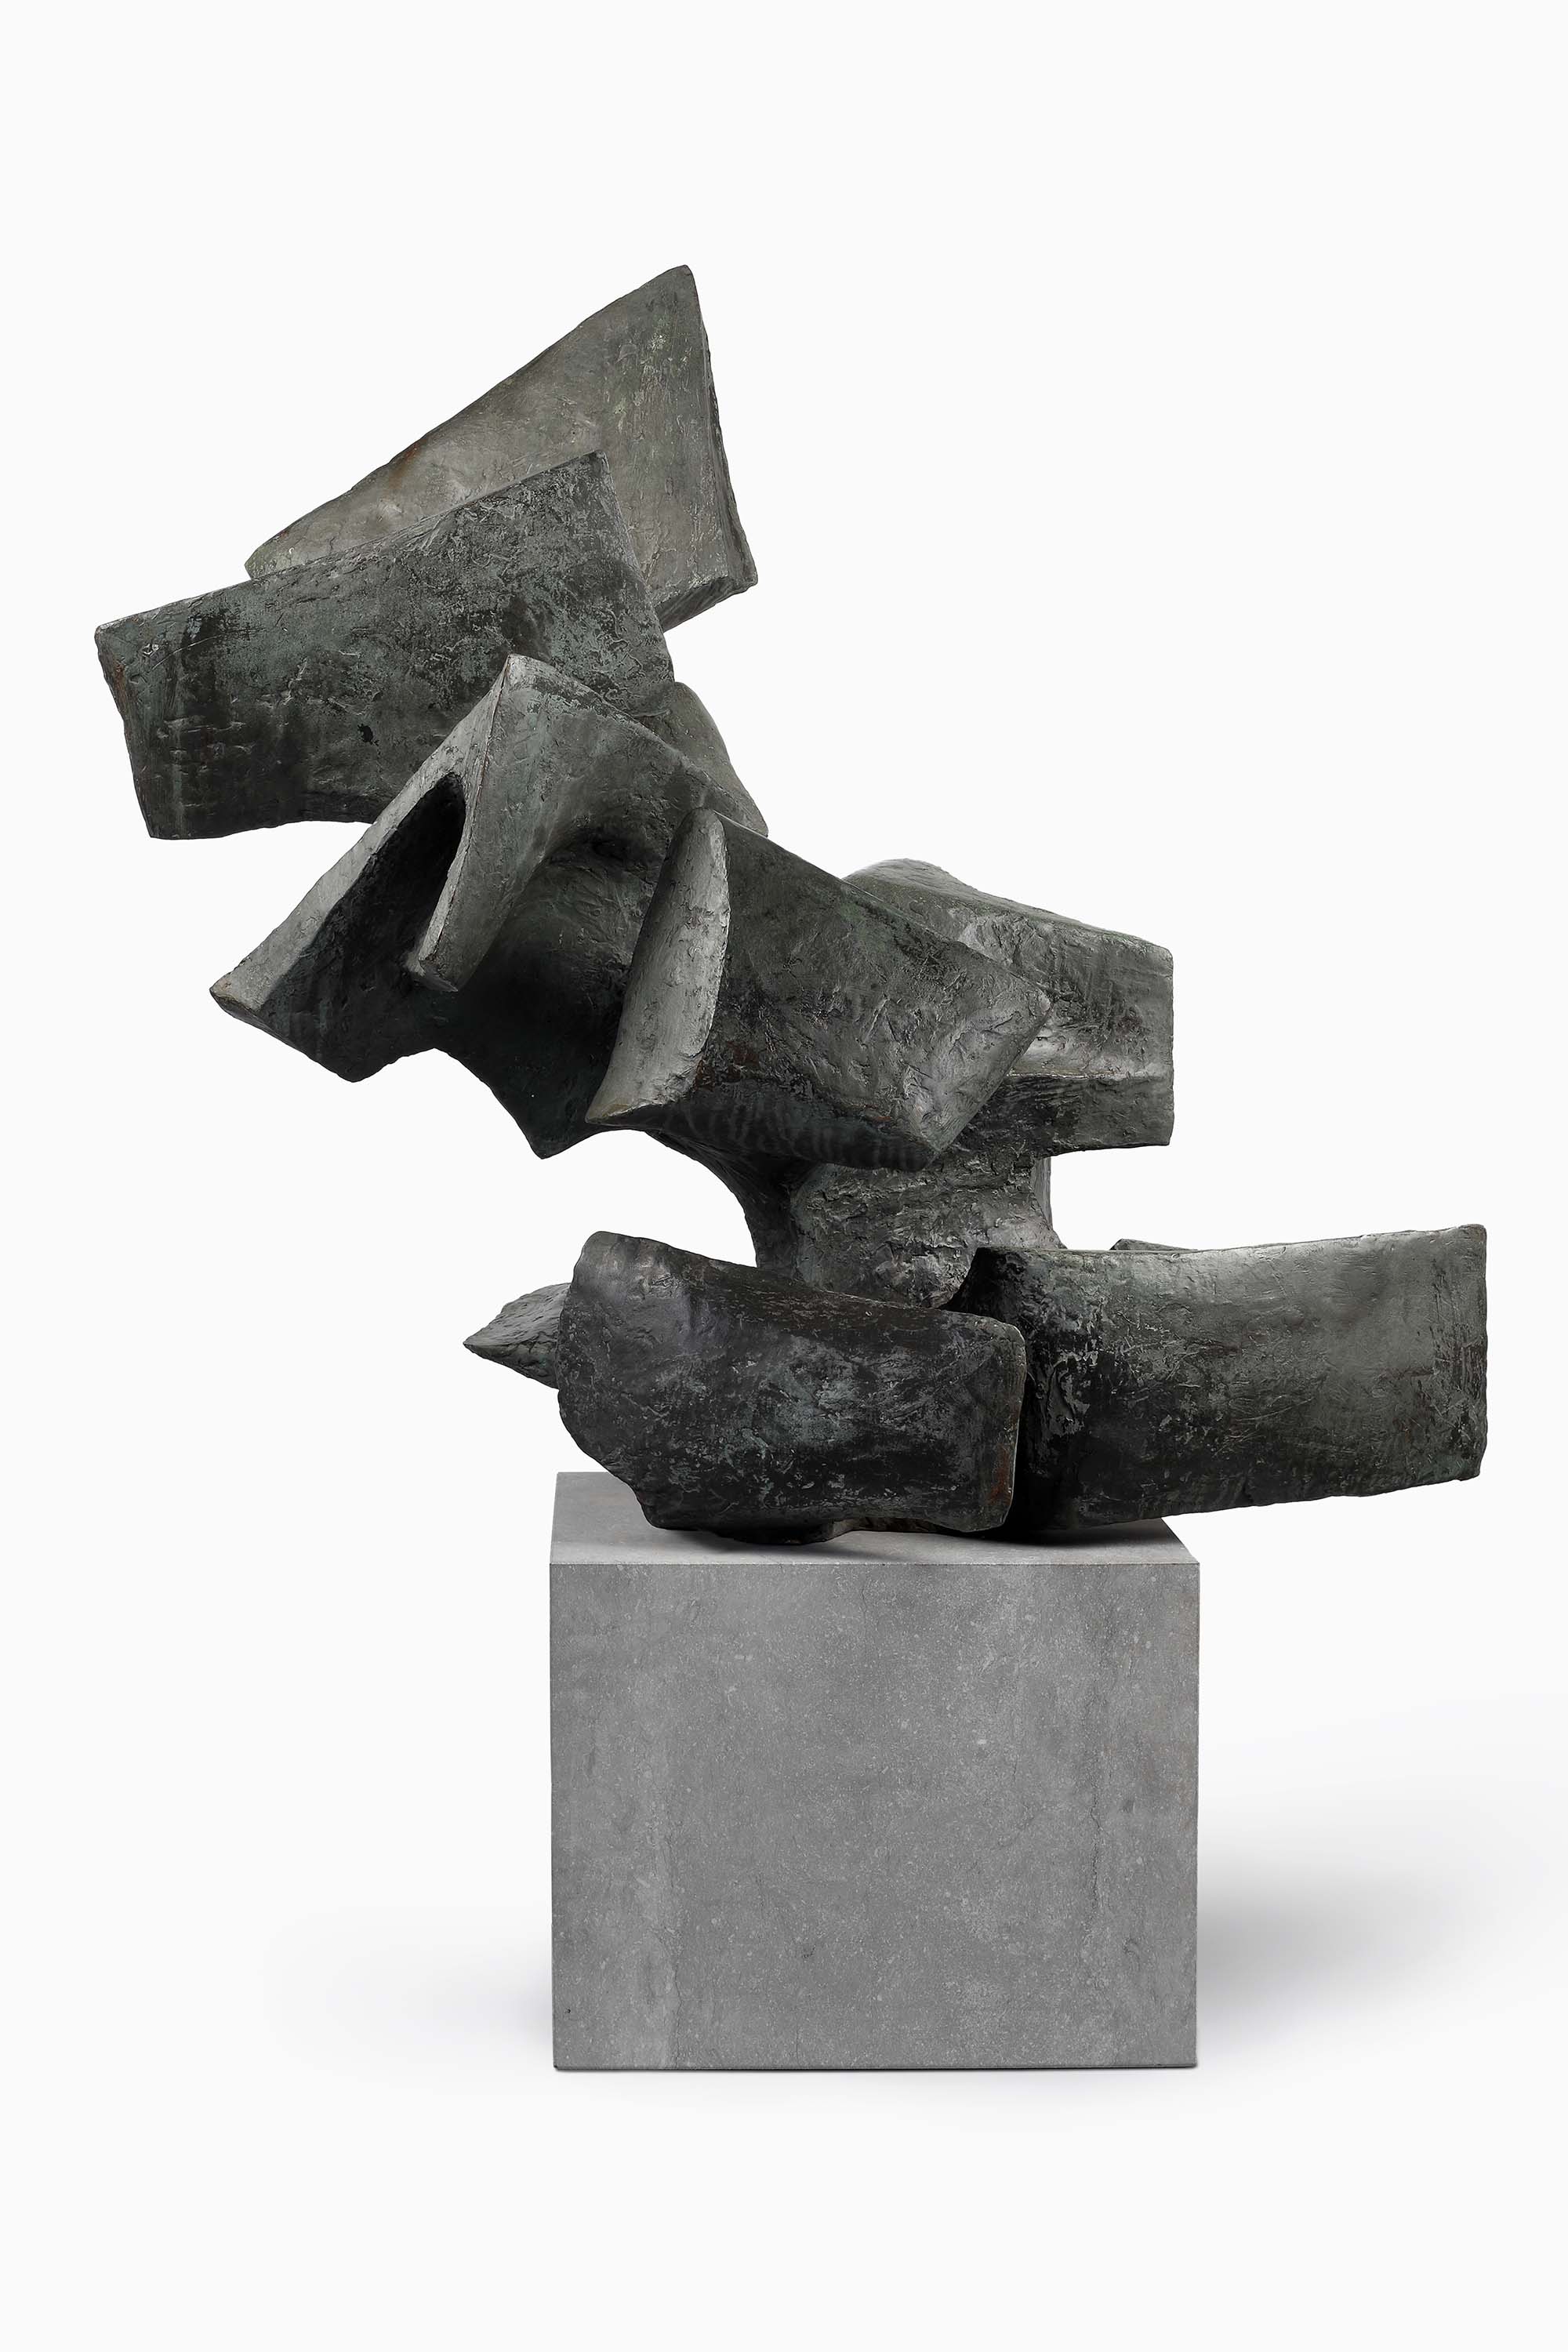 Alicia Penalba. Grande imanta, 1962, bronze